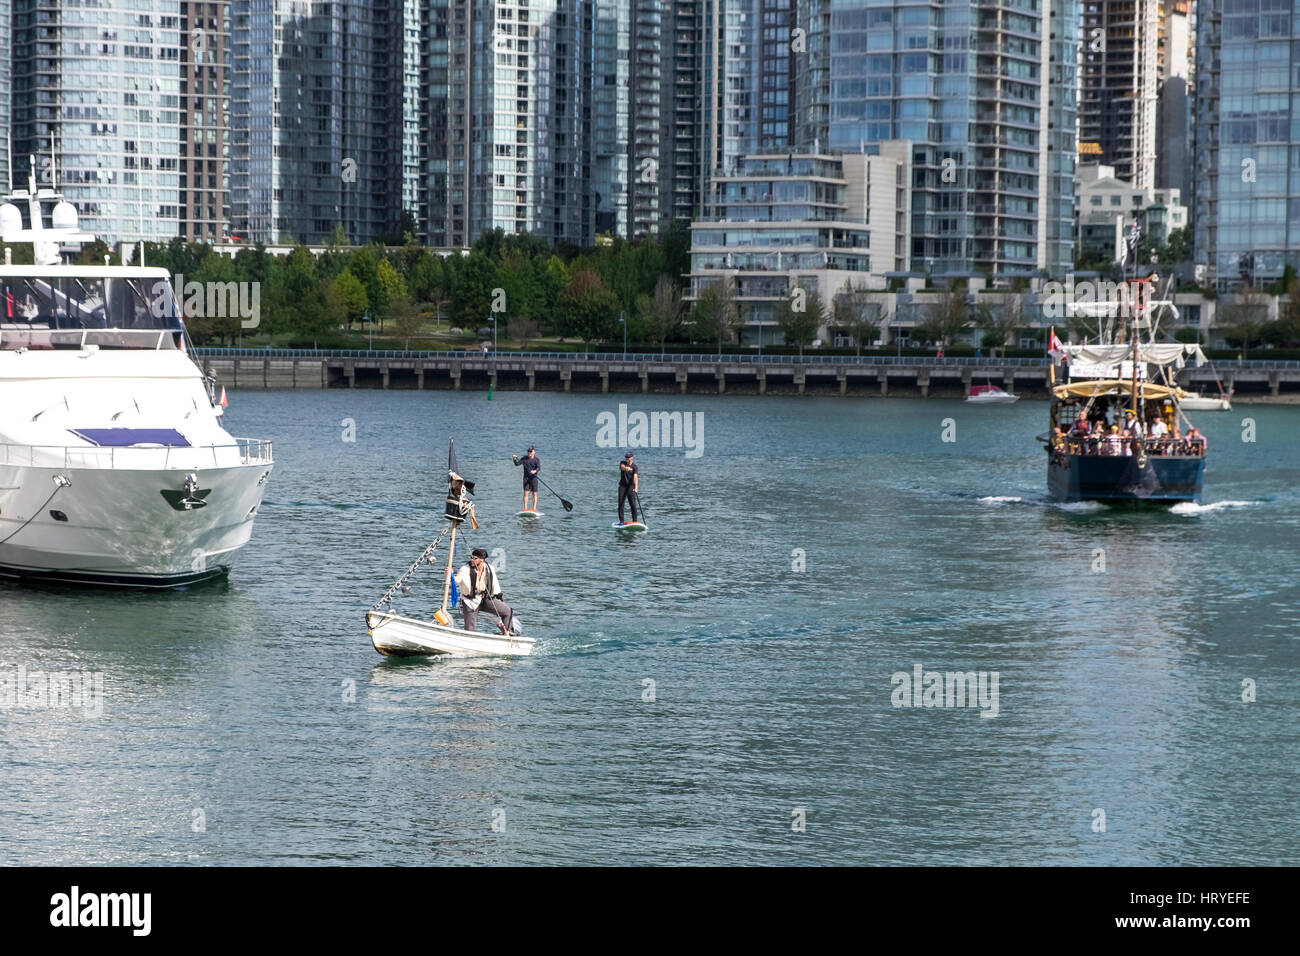 Ein Mann gekleidet wie ein Pirat in ein weißes Boot mit einem großen schwarzen Boot mit Segel nach unten und zwei Personen auf Paddel-gejagt wird. False Creek, Vancouver, BC. Stockfoto